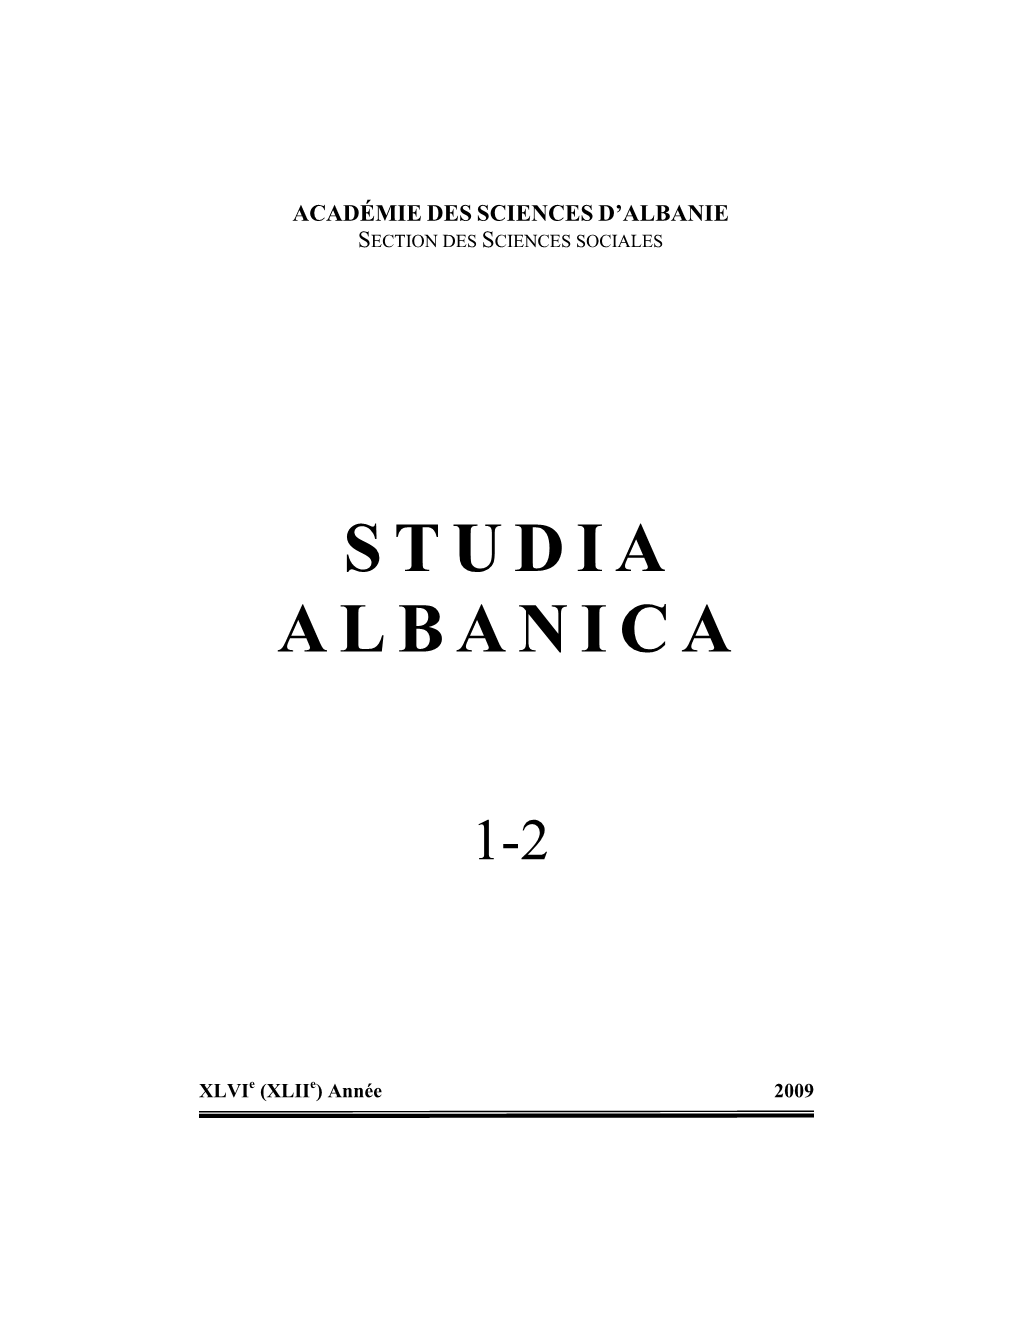 Studia Albanica ______